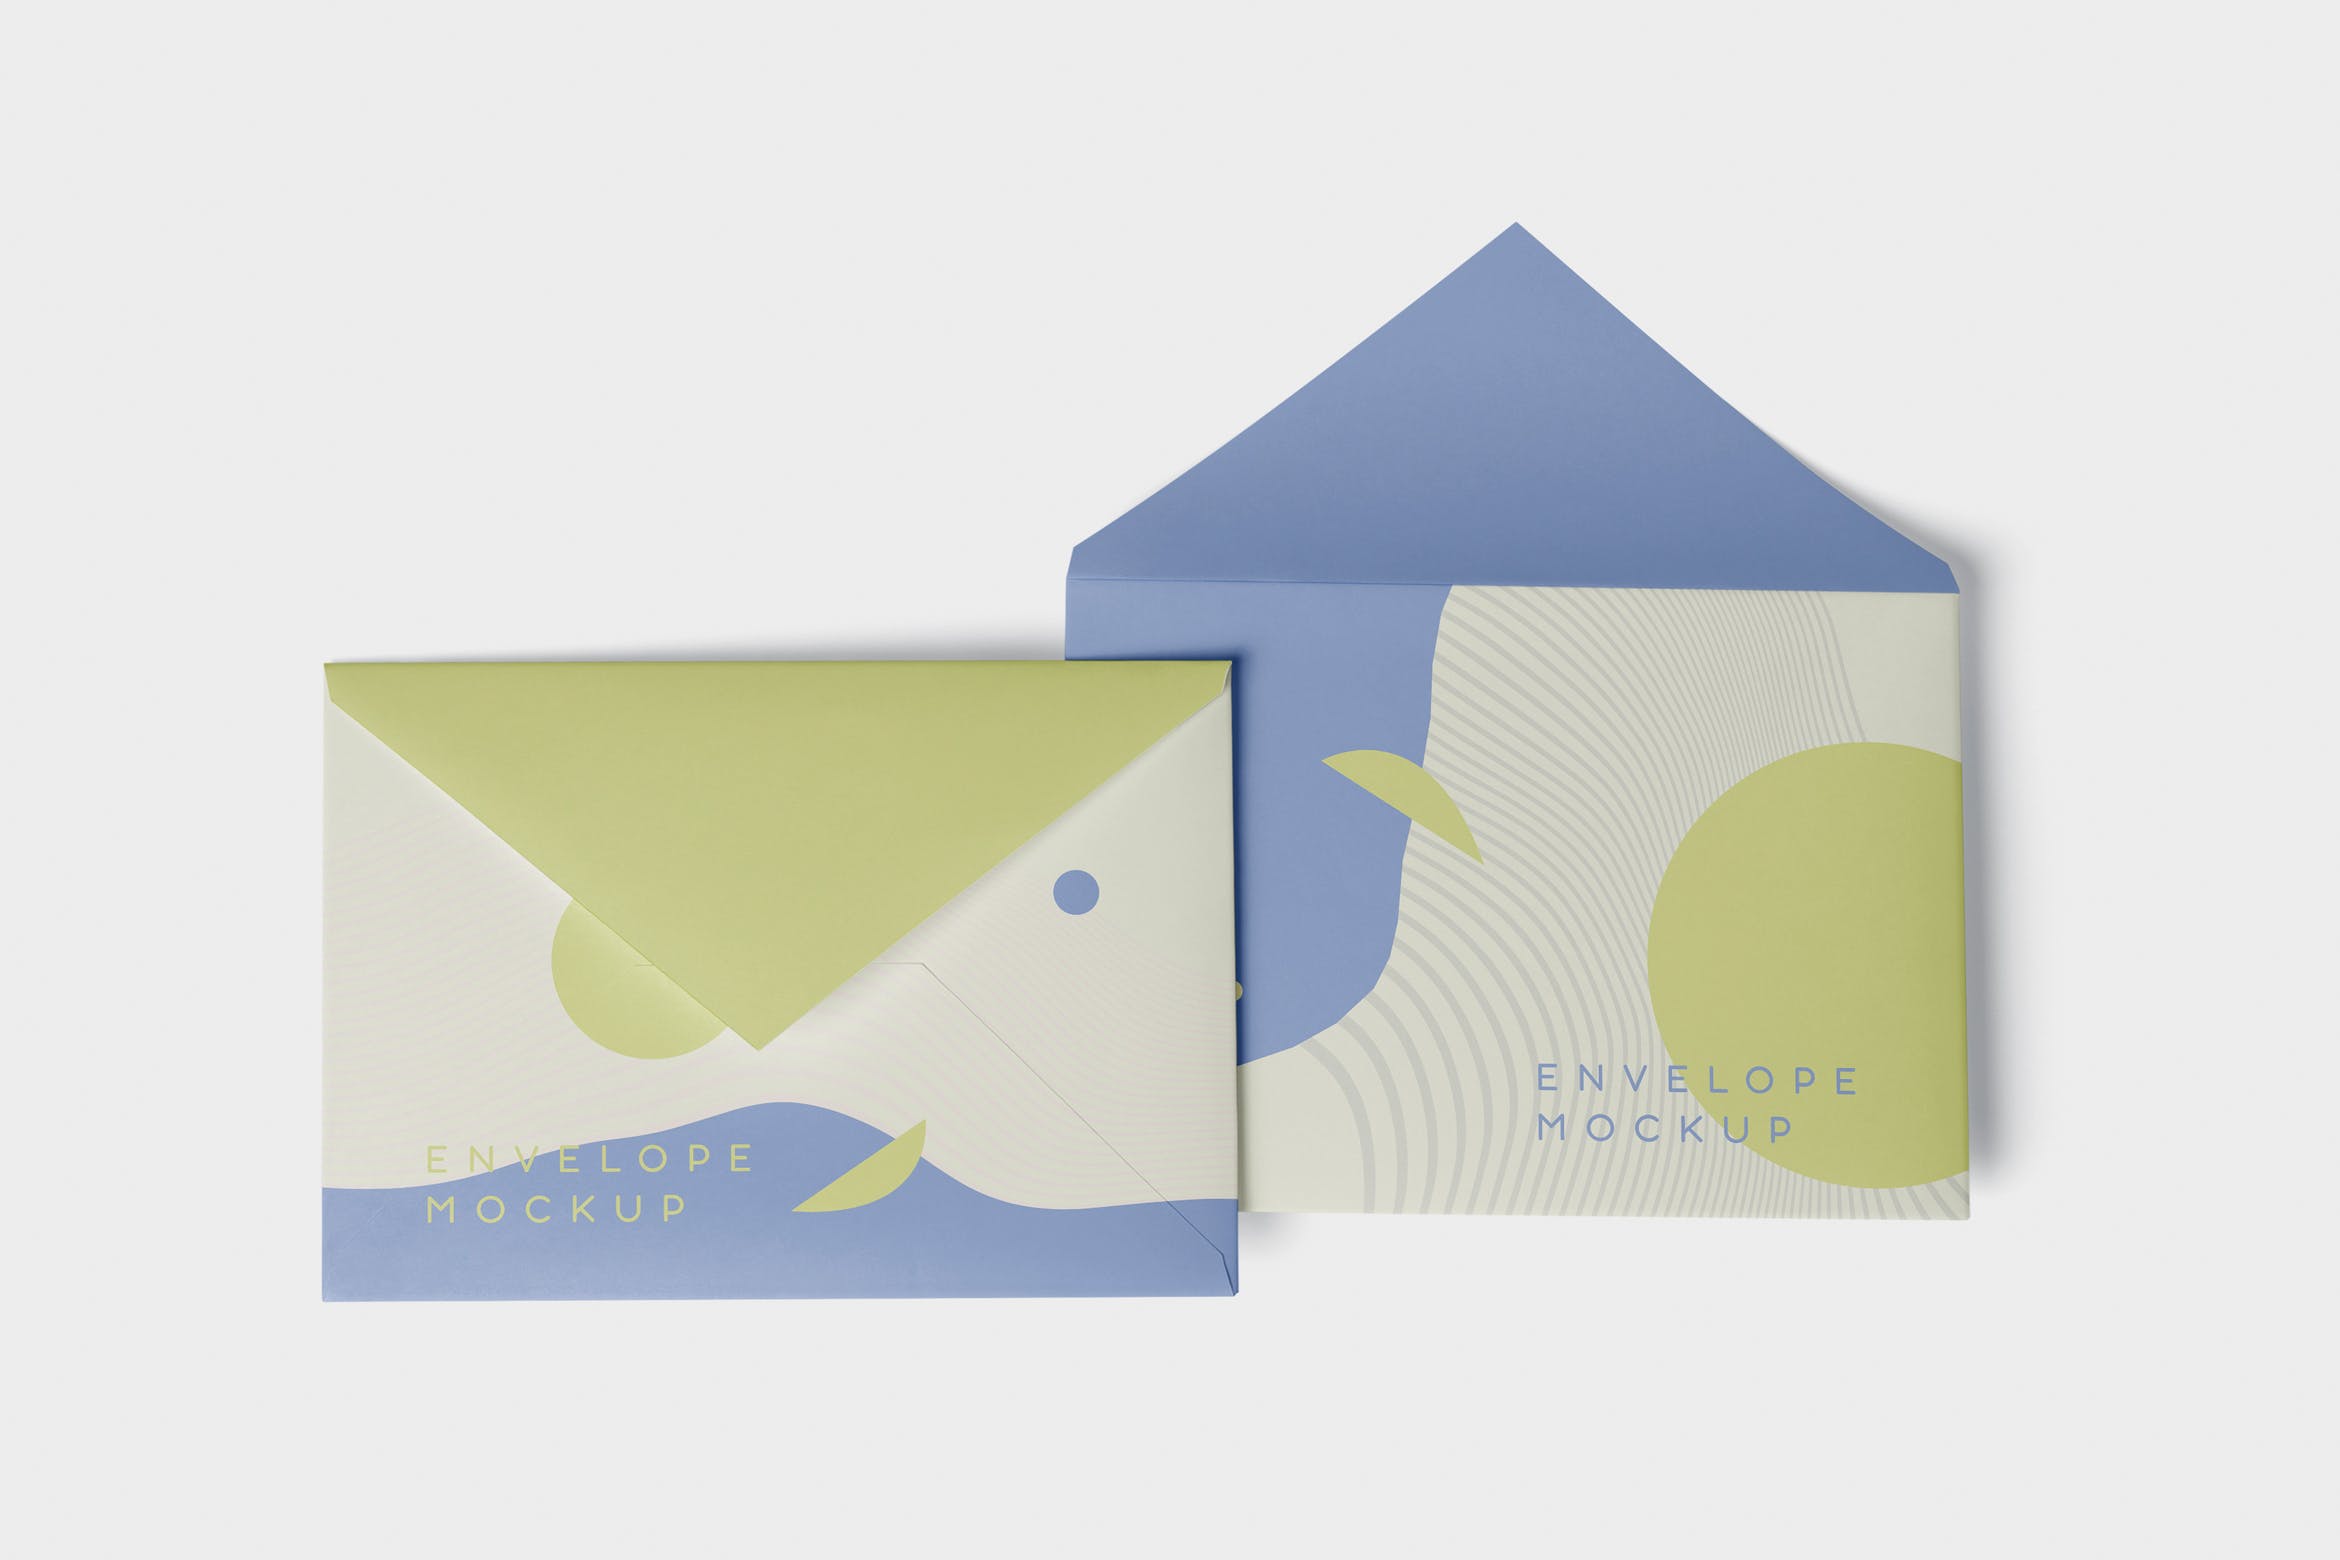 高端企业信封外观设计图第一素材精选模板 Envelope C5 – C6 Mock-Up Set插图